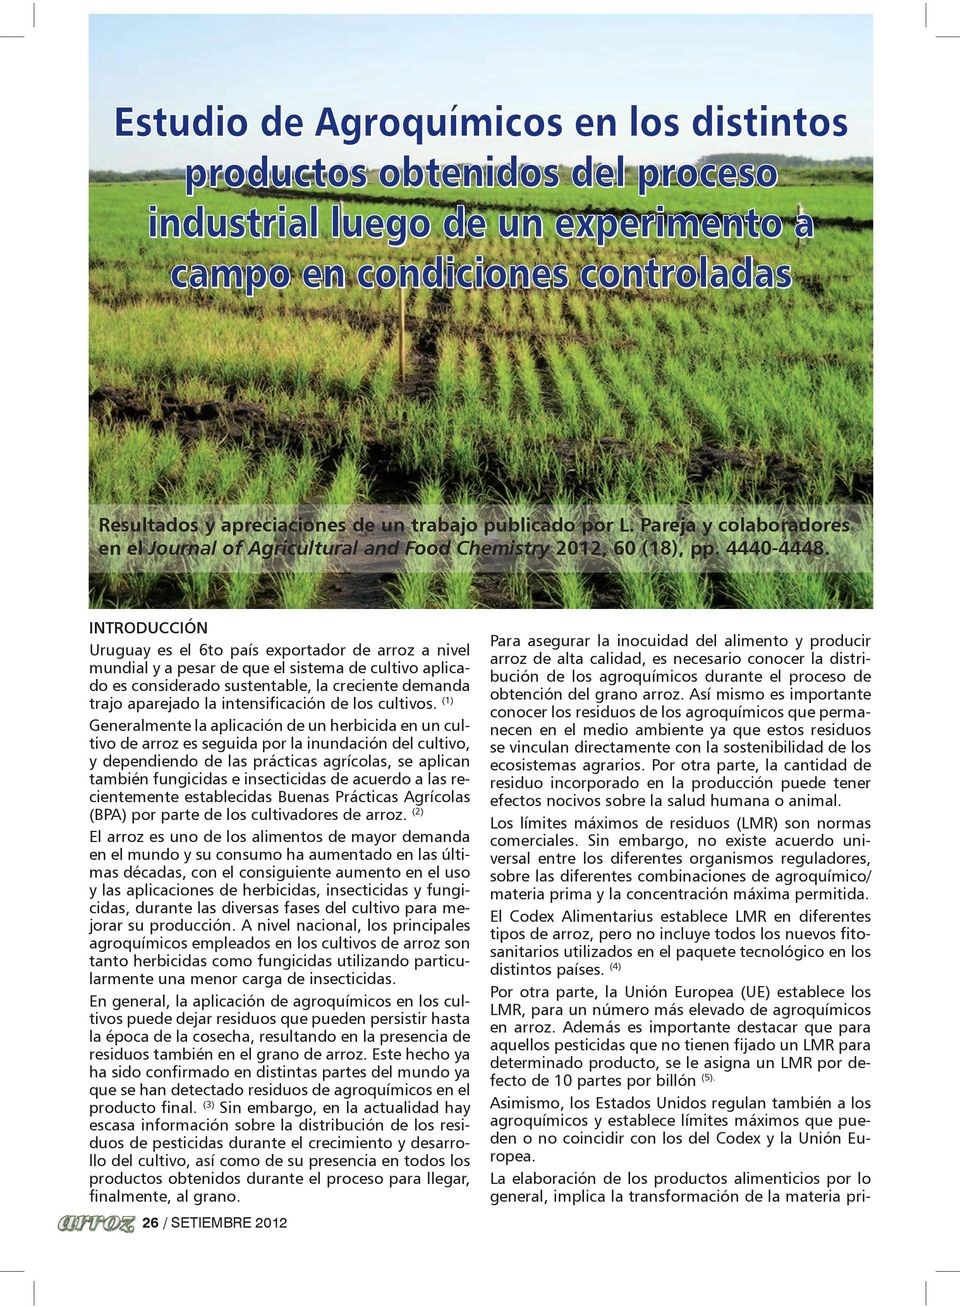 INTRODUCCIÓN Uruguay es el 6to país exportador de arroz a nivel mundial y a pesar de que el sistema de cultivo aplicado es considerado sustentable, la creciente demanda trajo aparejado la